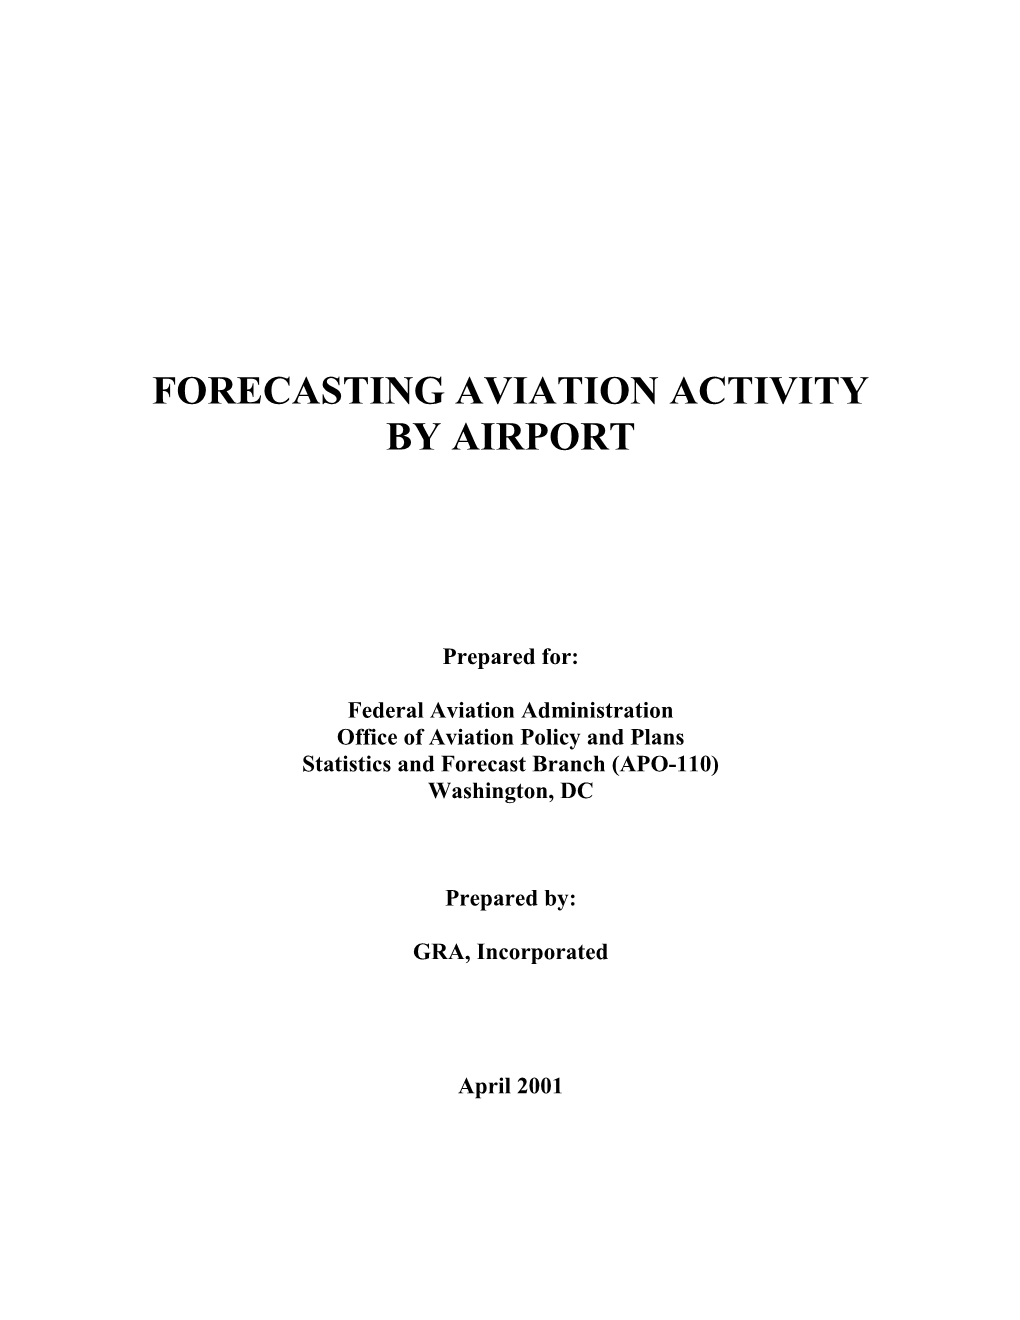 Forecasting Aviation Activity